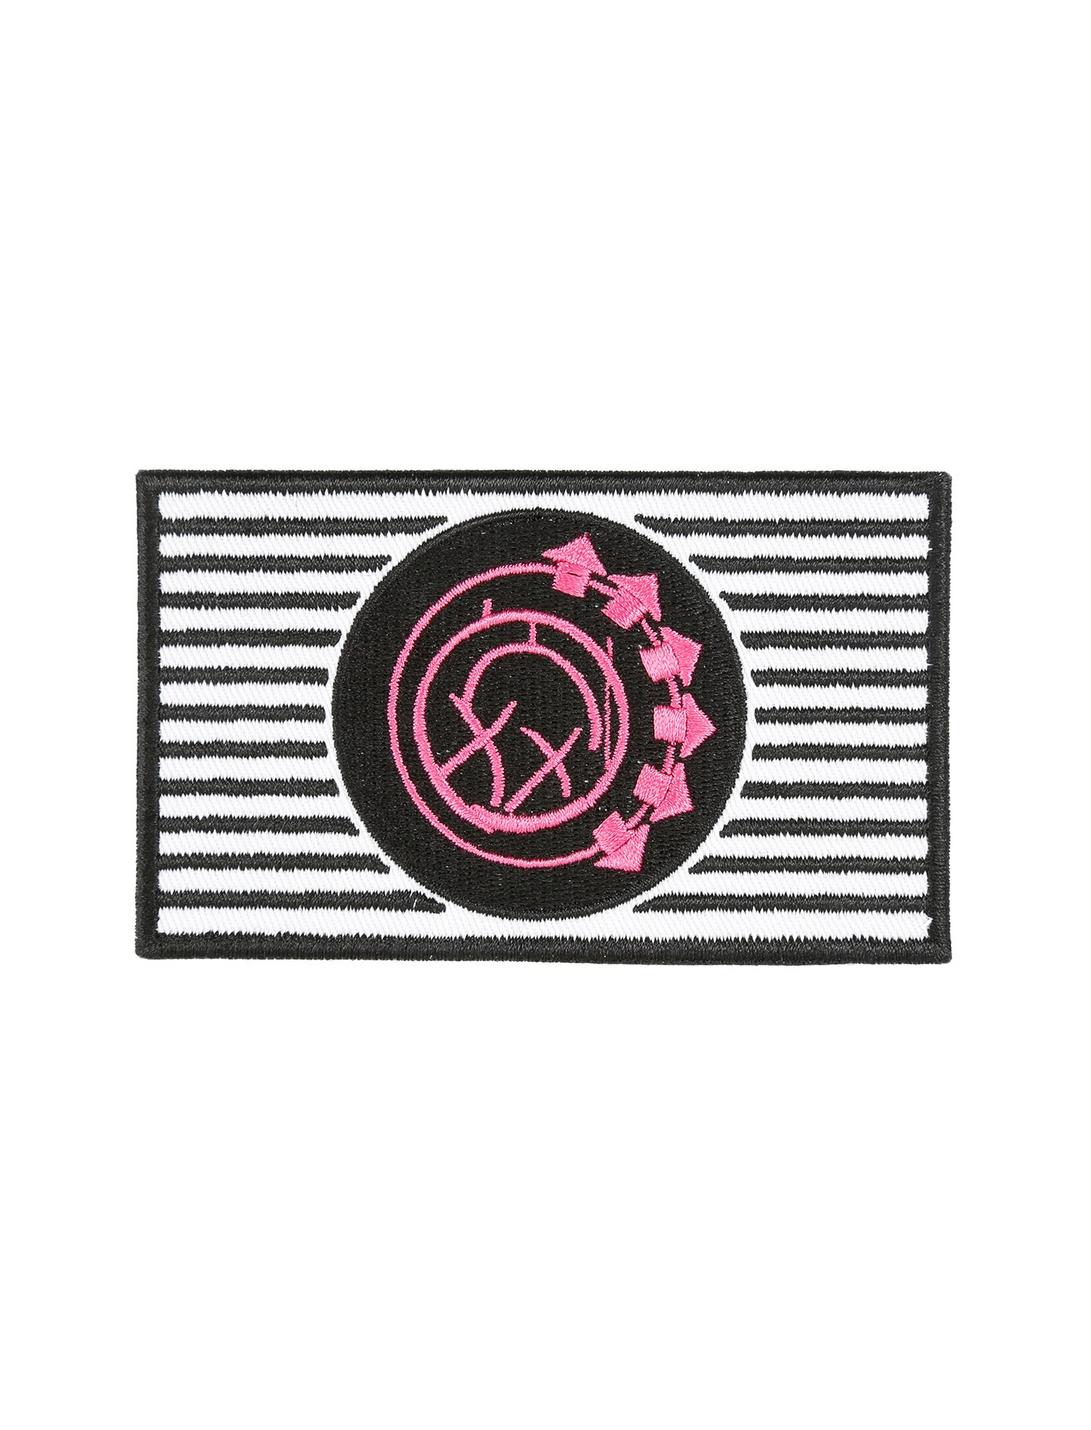 Blink-182 Logo Patch, , hi-res